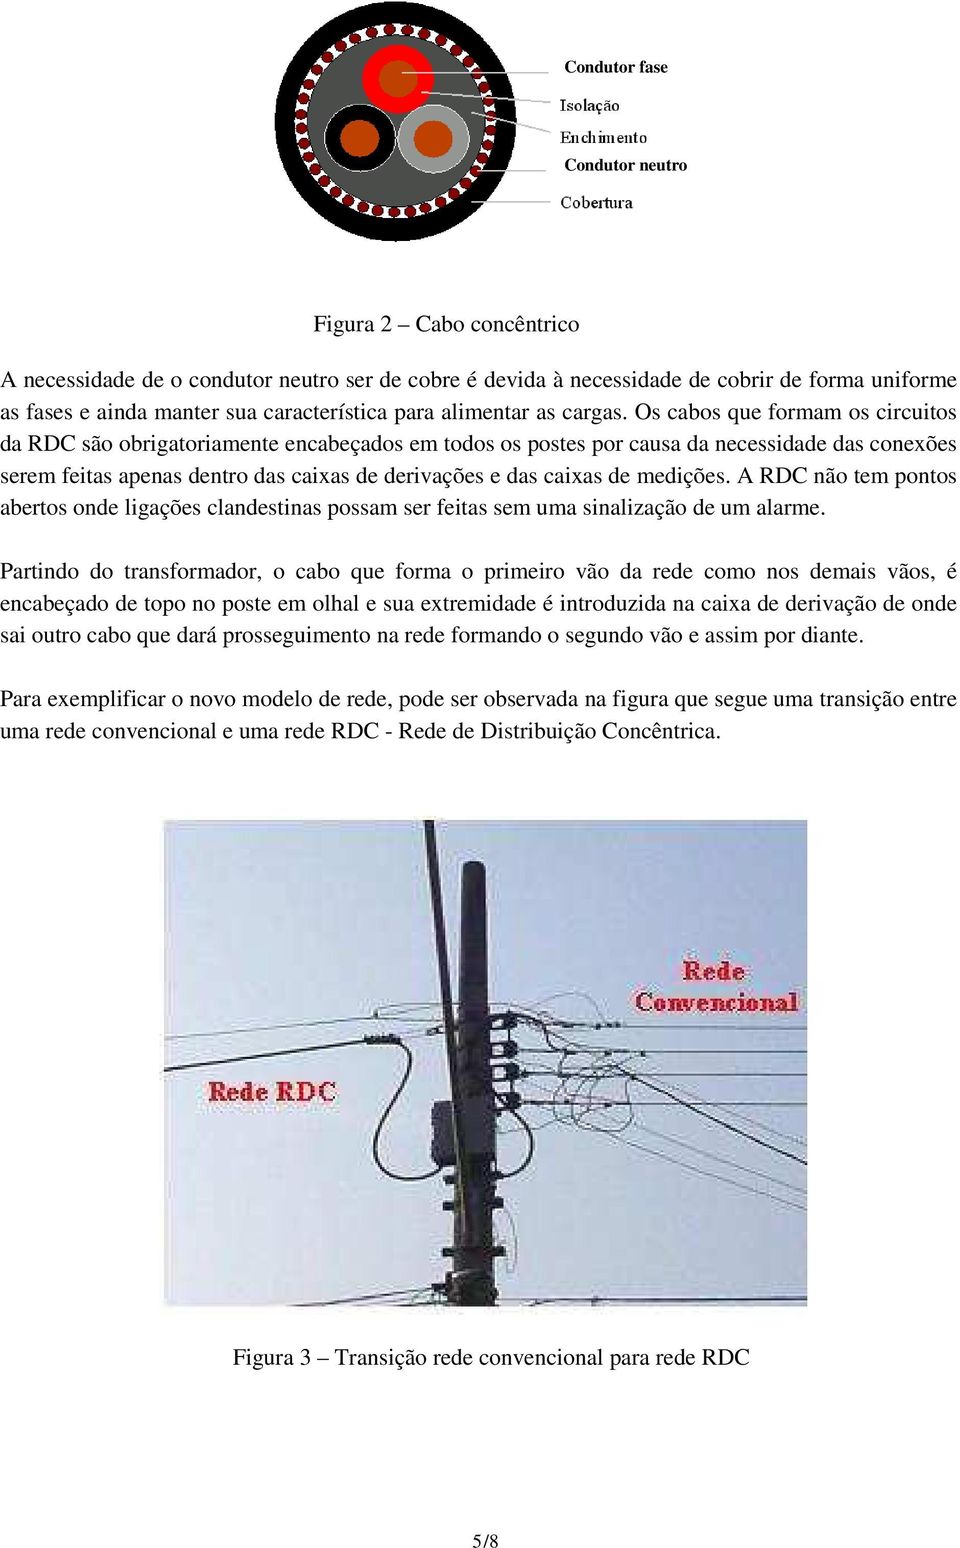 Os cabos que formam os circuitos da RDC são obrigatoriamente encabeçados em todos os postes por causa da necessidade das conexões serem feitas apenas dentro das caixas de derivações e das caixas de